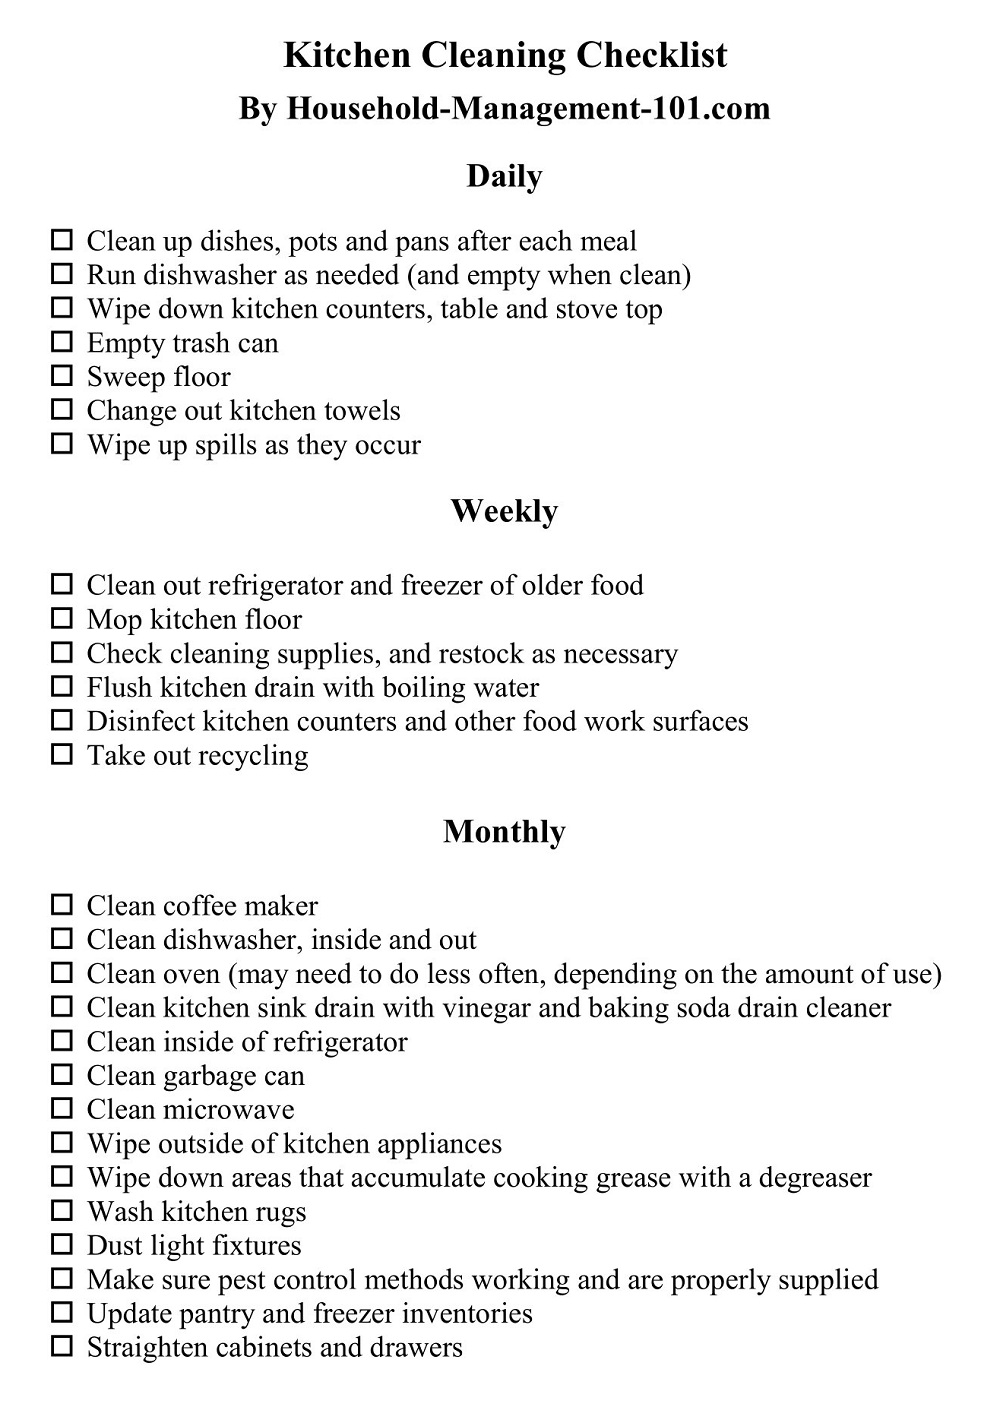 Standard Kitchen Cleaning Checklist